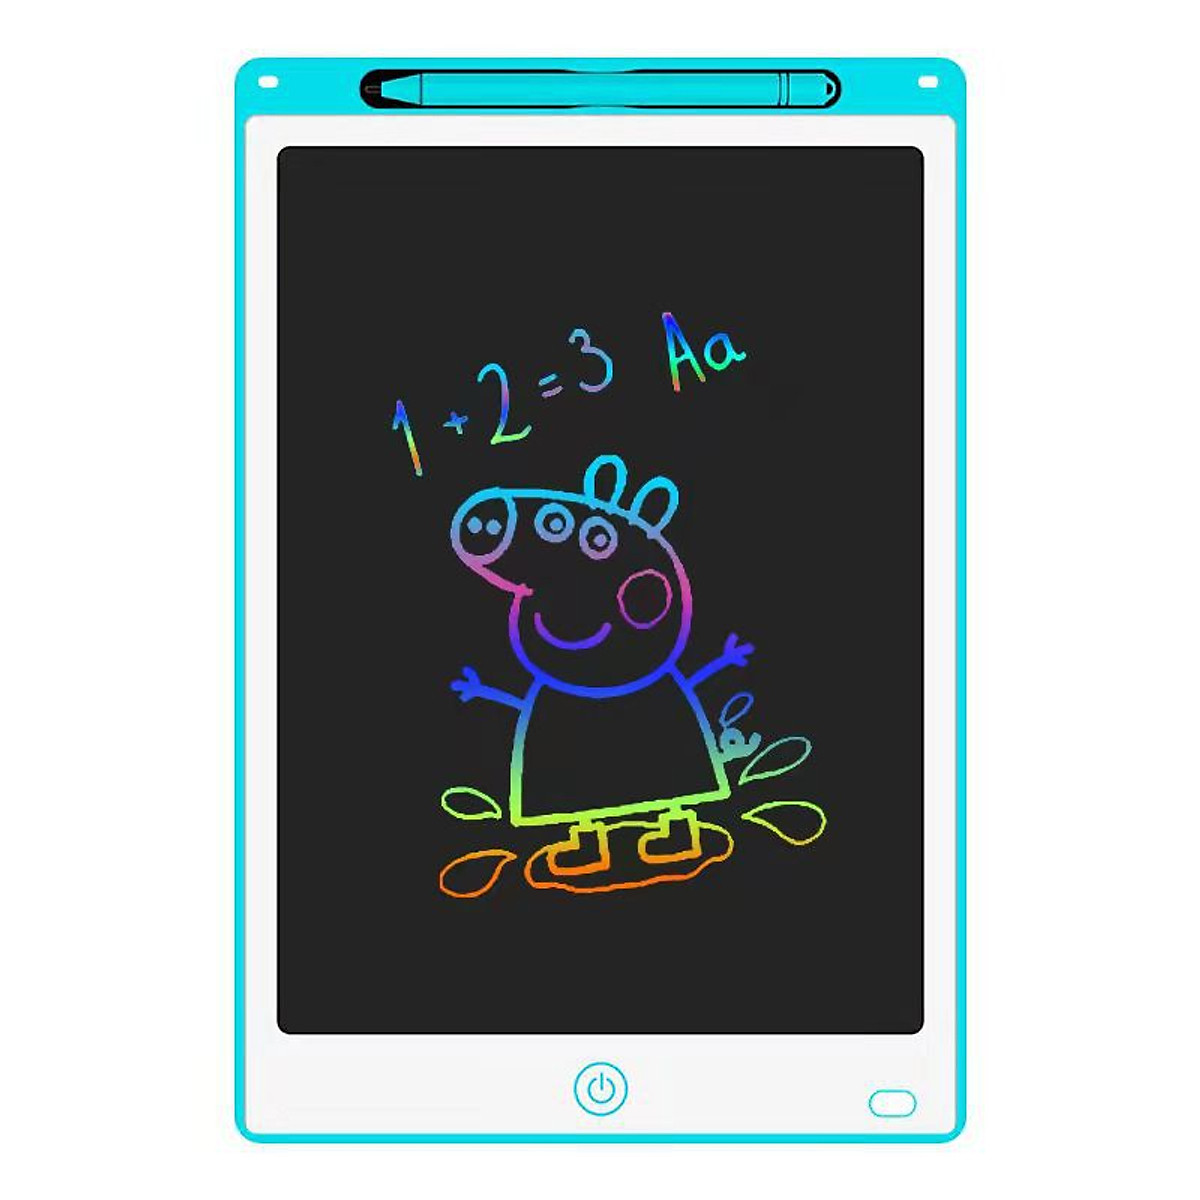 Bạn muốn tìm kiếm một công cụ bảng viết đa sắc, được thiết kế đặc biệt cho trẻ em và giới trẻ? Bảng viết điện tử 3D là sự lựa chọn thông minh cho các bạn trẻ có niềm đam mê nghệ thuật. Xem ngay các hình ảnh về bảng viết đa sắc để chọn mua cho mình một sản phẩm tuyệt vời để sáng tạo và vui chơi.